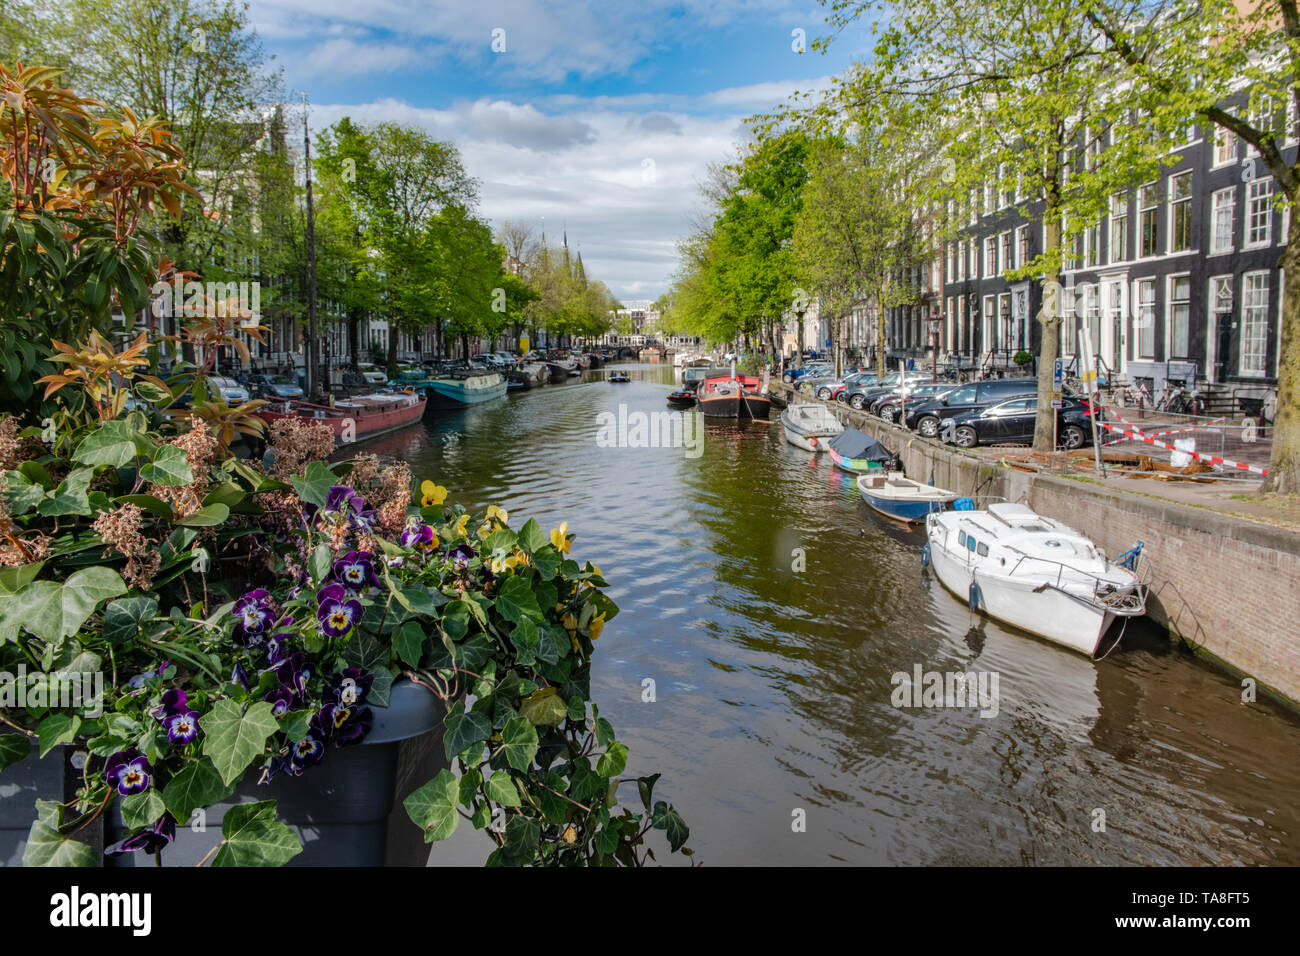 Du canal d'Amsterdam, avec des fleurs - une ligne de bateaux du canal canal européen en Hollande avec des maisons de canal Amsterdam - Amsterdam architecture typique Banque D'Images